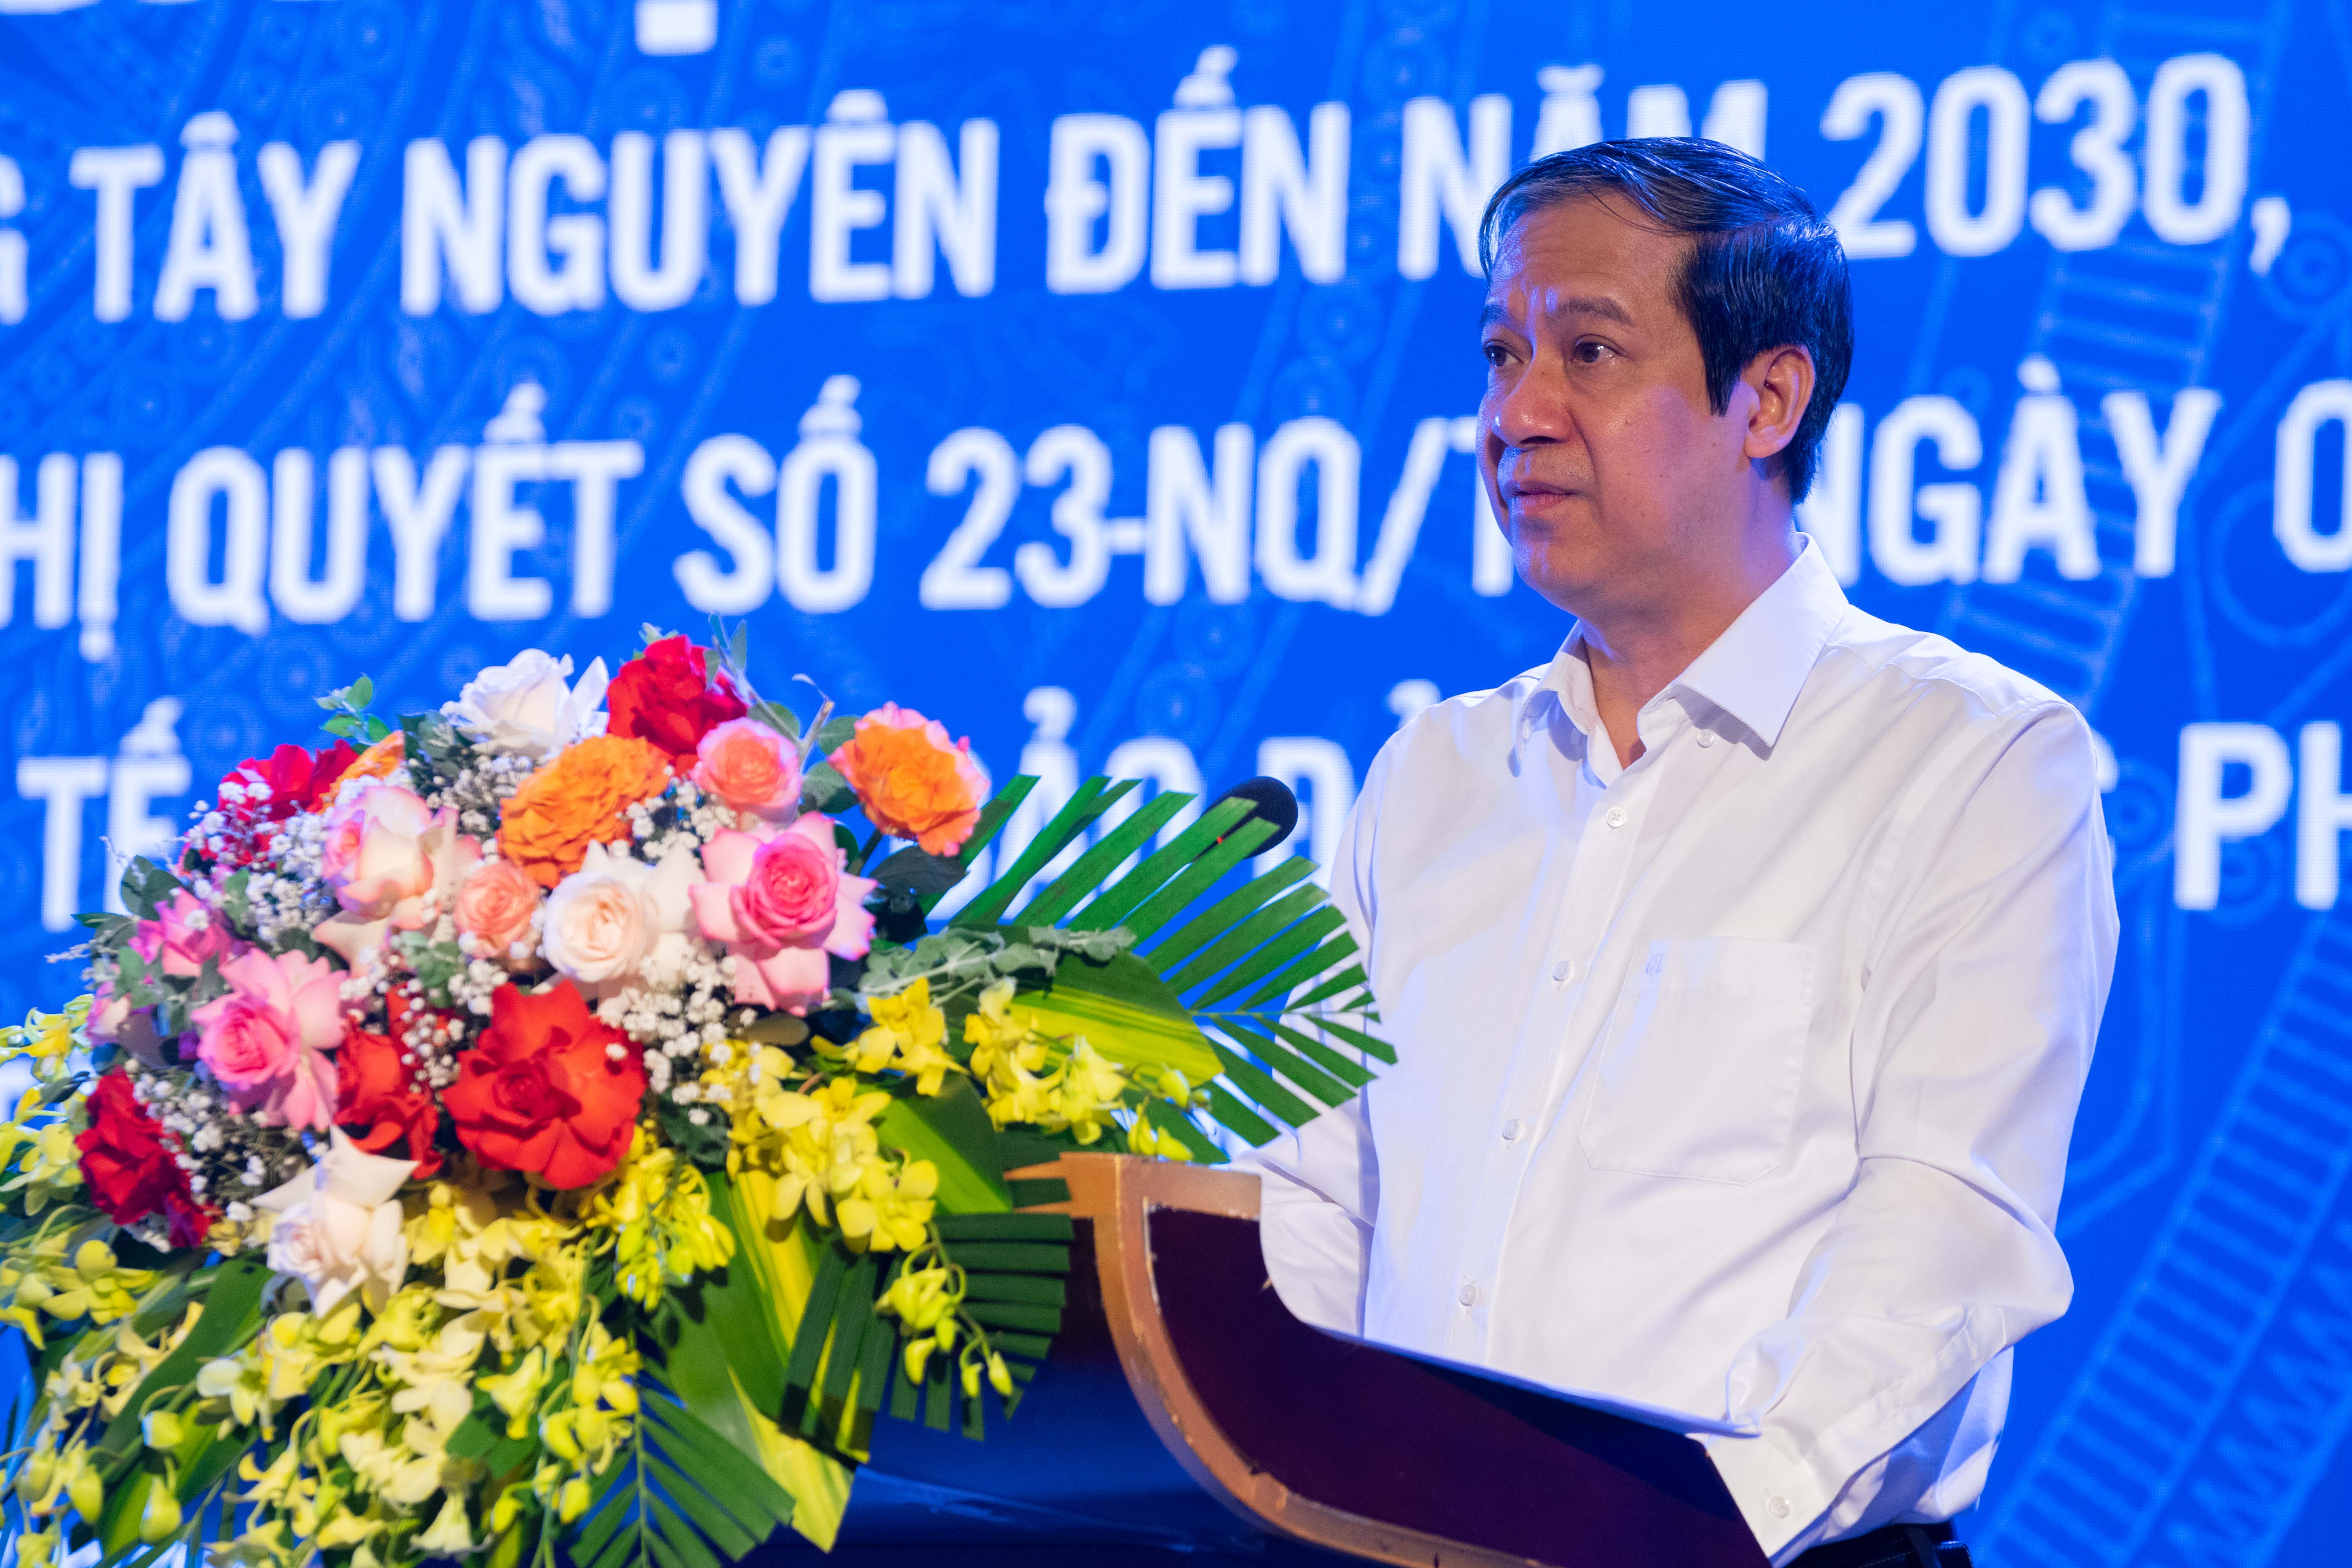 Bộ trưởng Nguyễn Kim Sơn phát biểu kết luận tại Hội nghị phát triển giáo dục và đào tạo vùng Tây Nguyên đến năm 2030, tầm nhìn đến năm 2045.